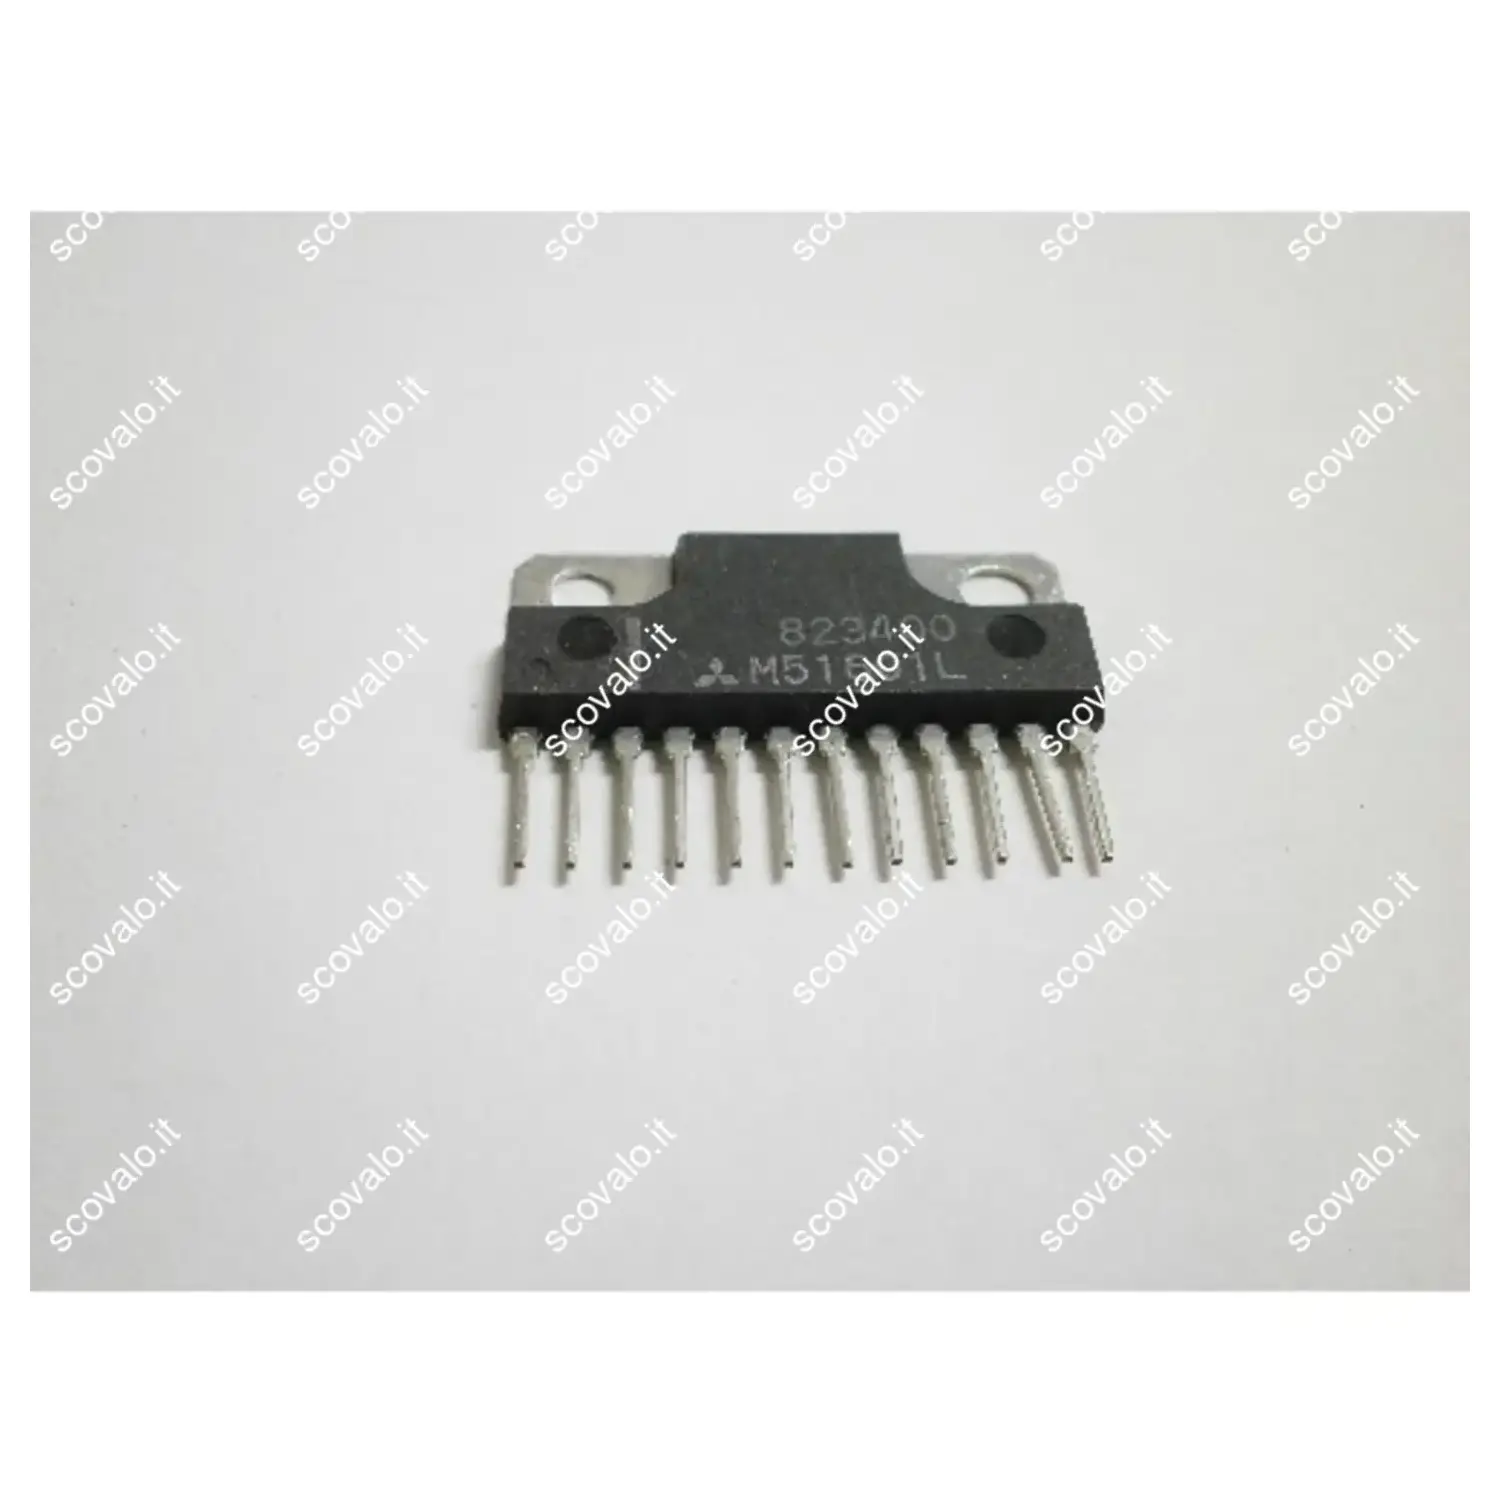 immagine del prodotto mitsubishi m51601l amplificatore audio var m51601l